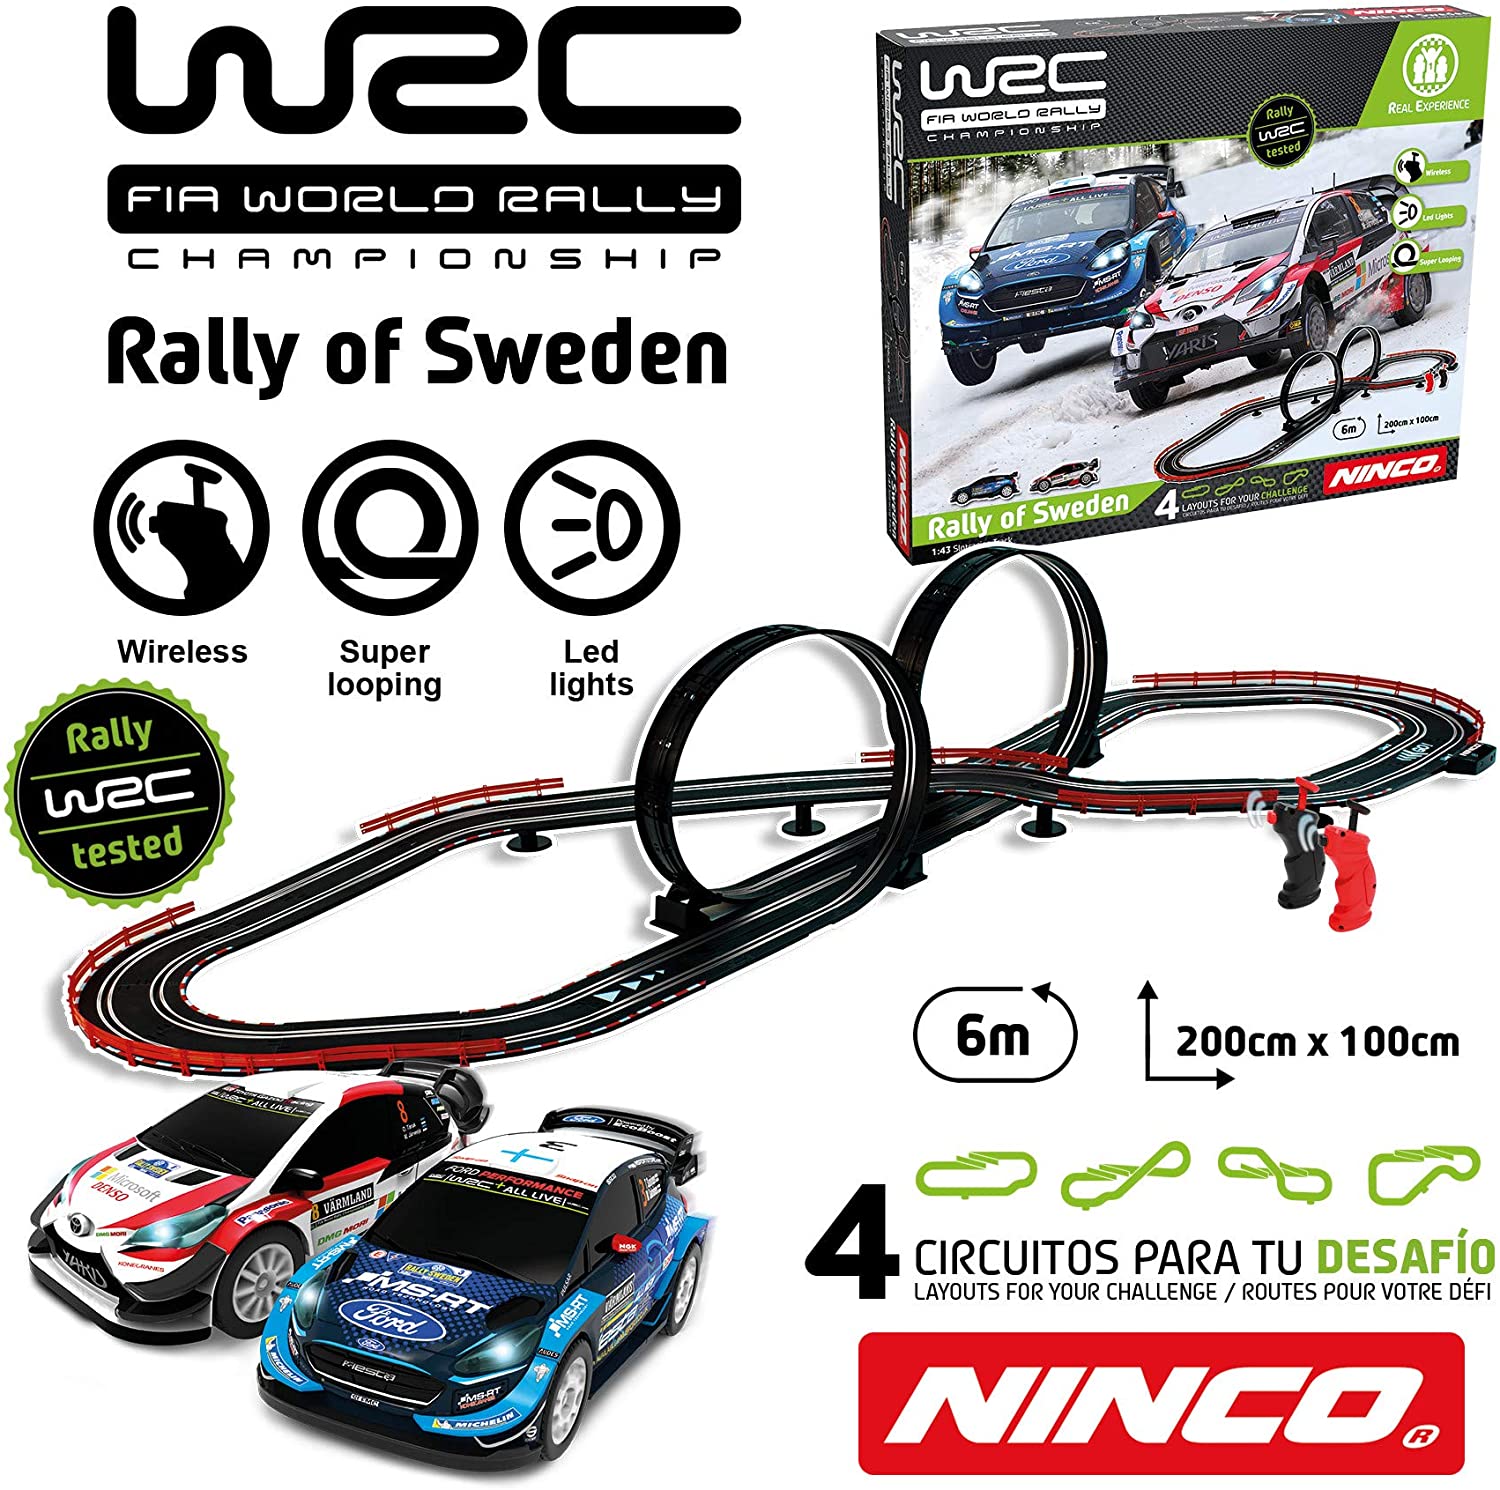 ninco circuito wrc rally suecia 1/43